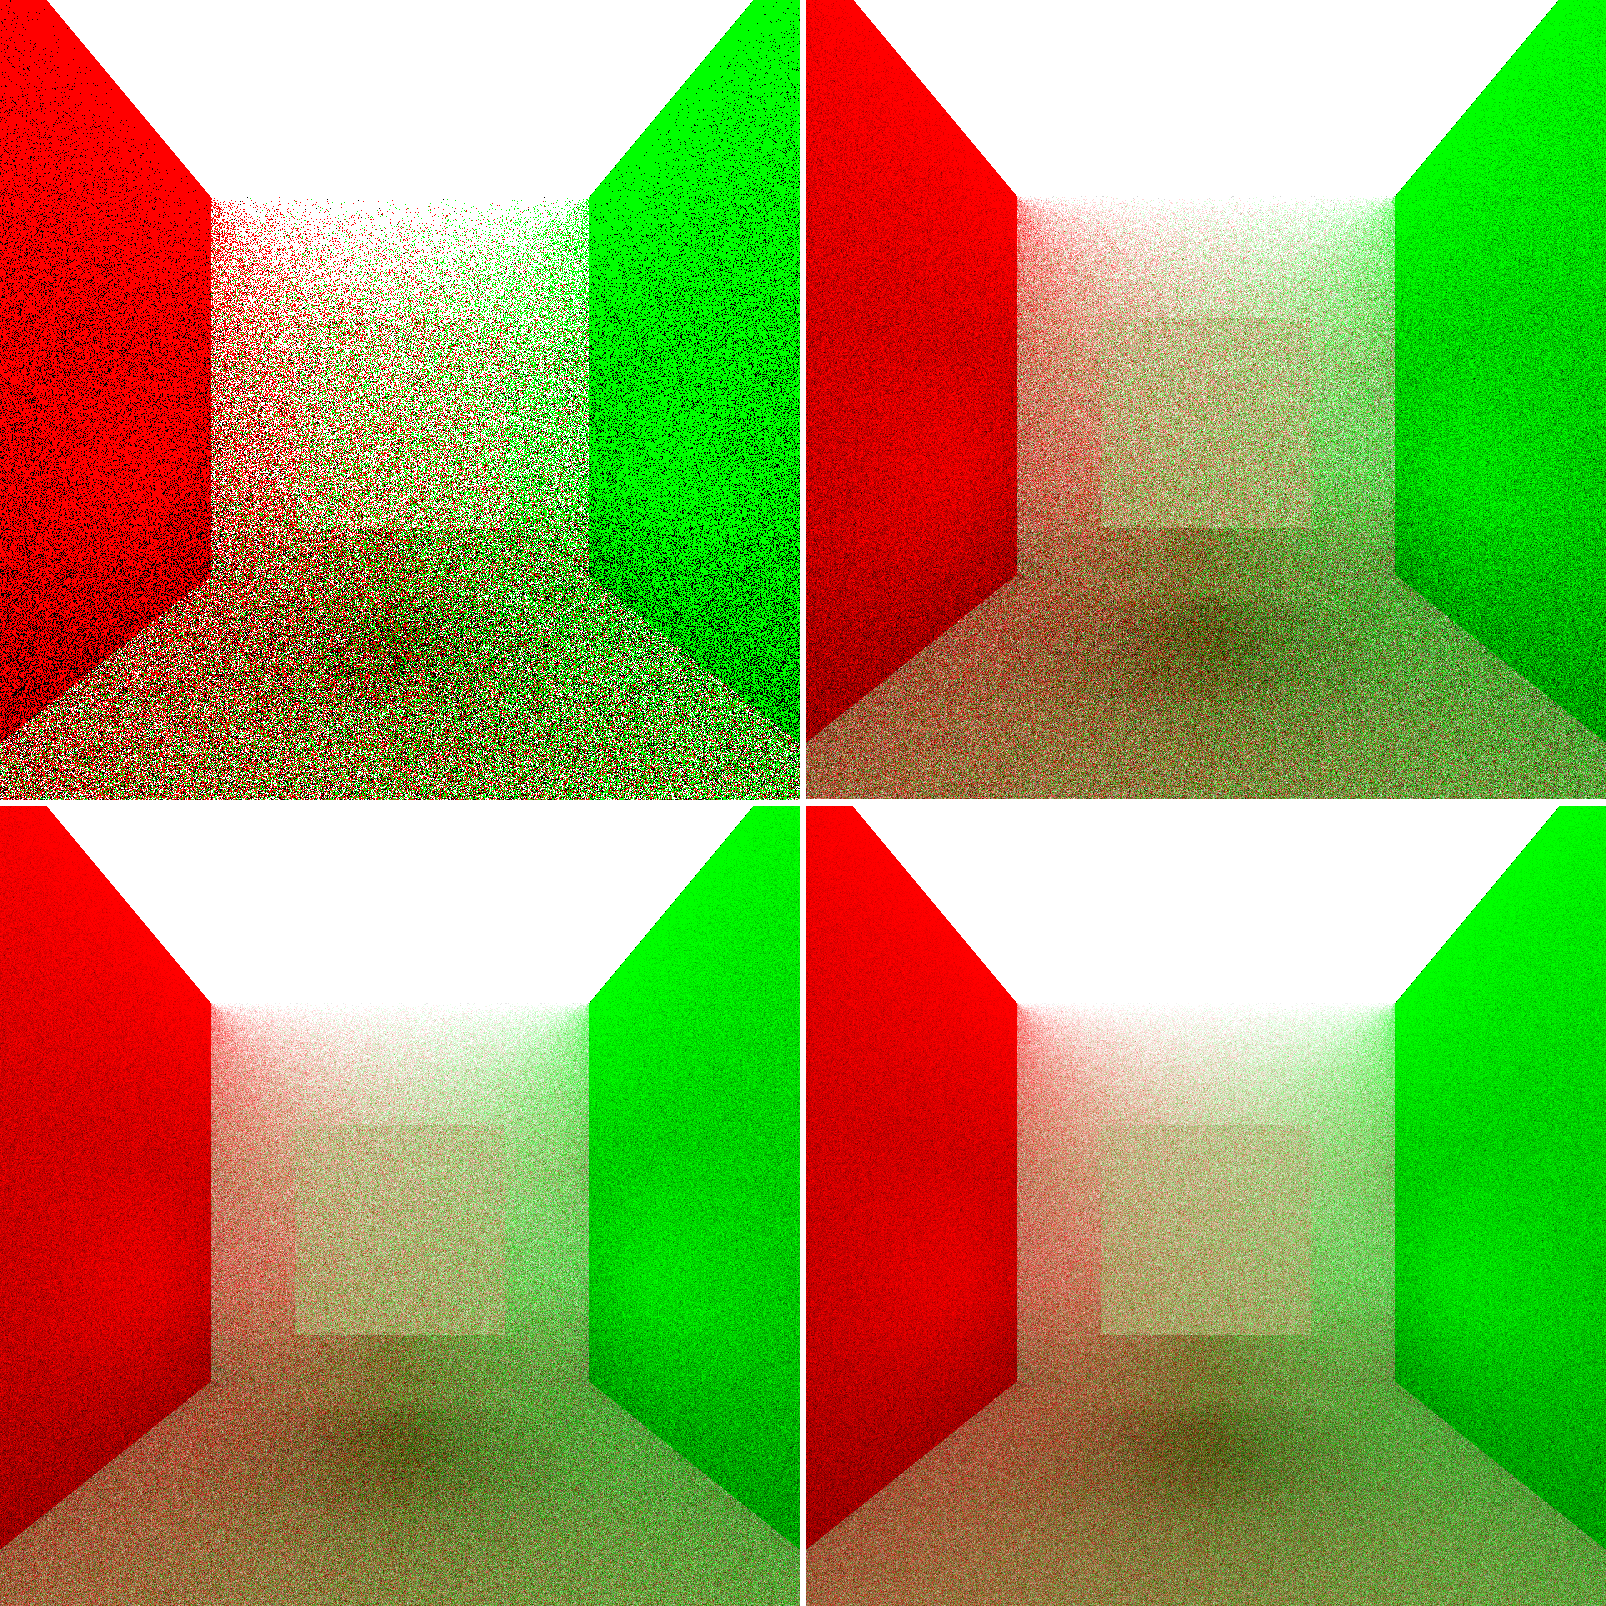 Upper Left: 1 iteration. Upper Right: 5 iterations. Lower Left: 10 iterations. Lower Right: 15 iterations.